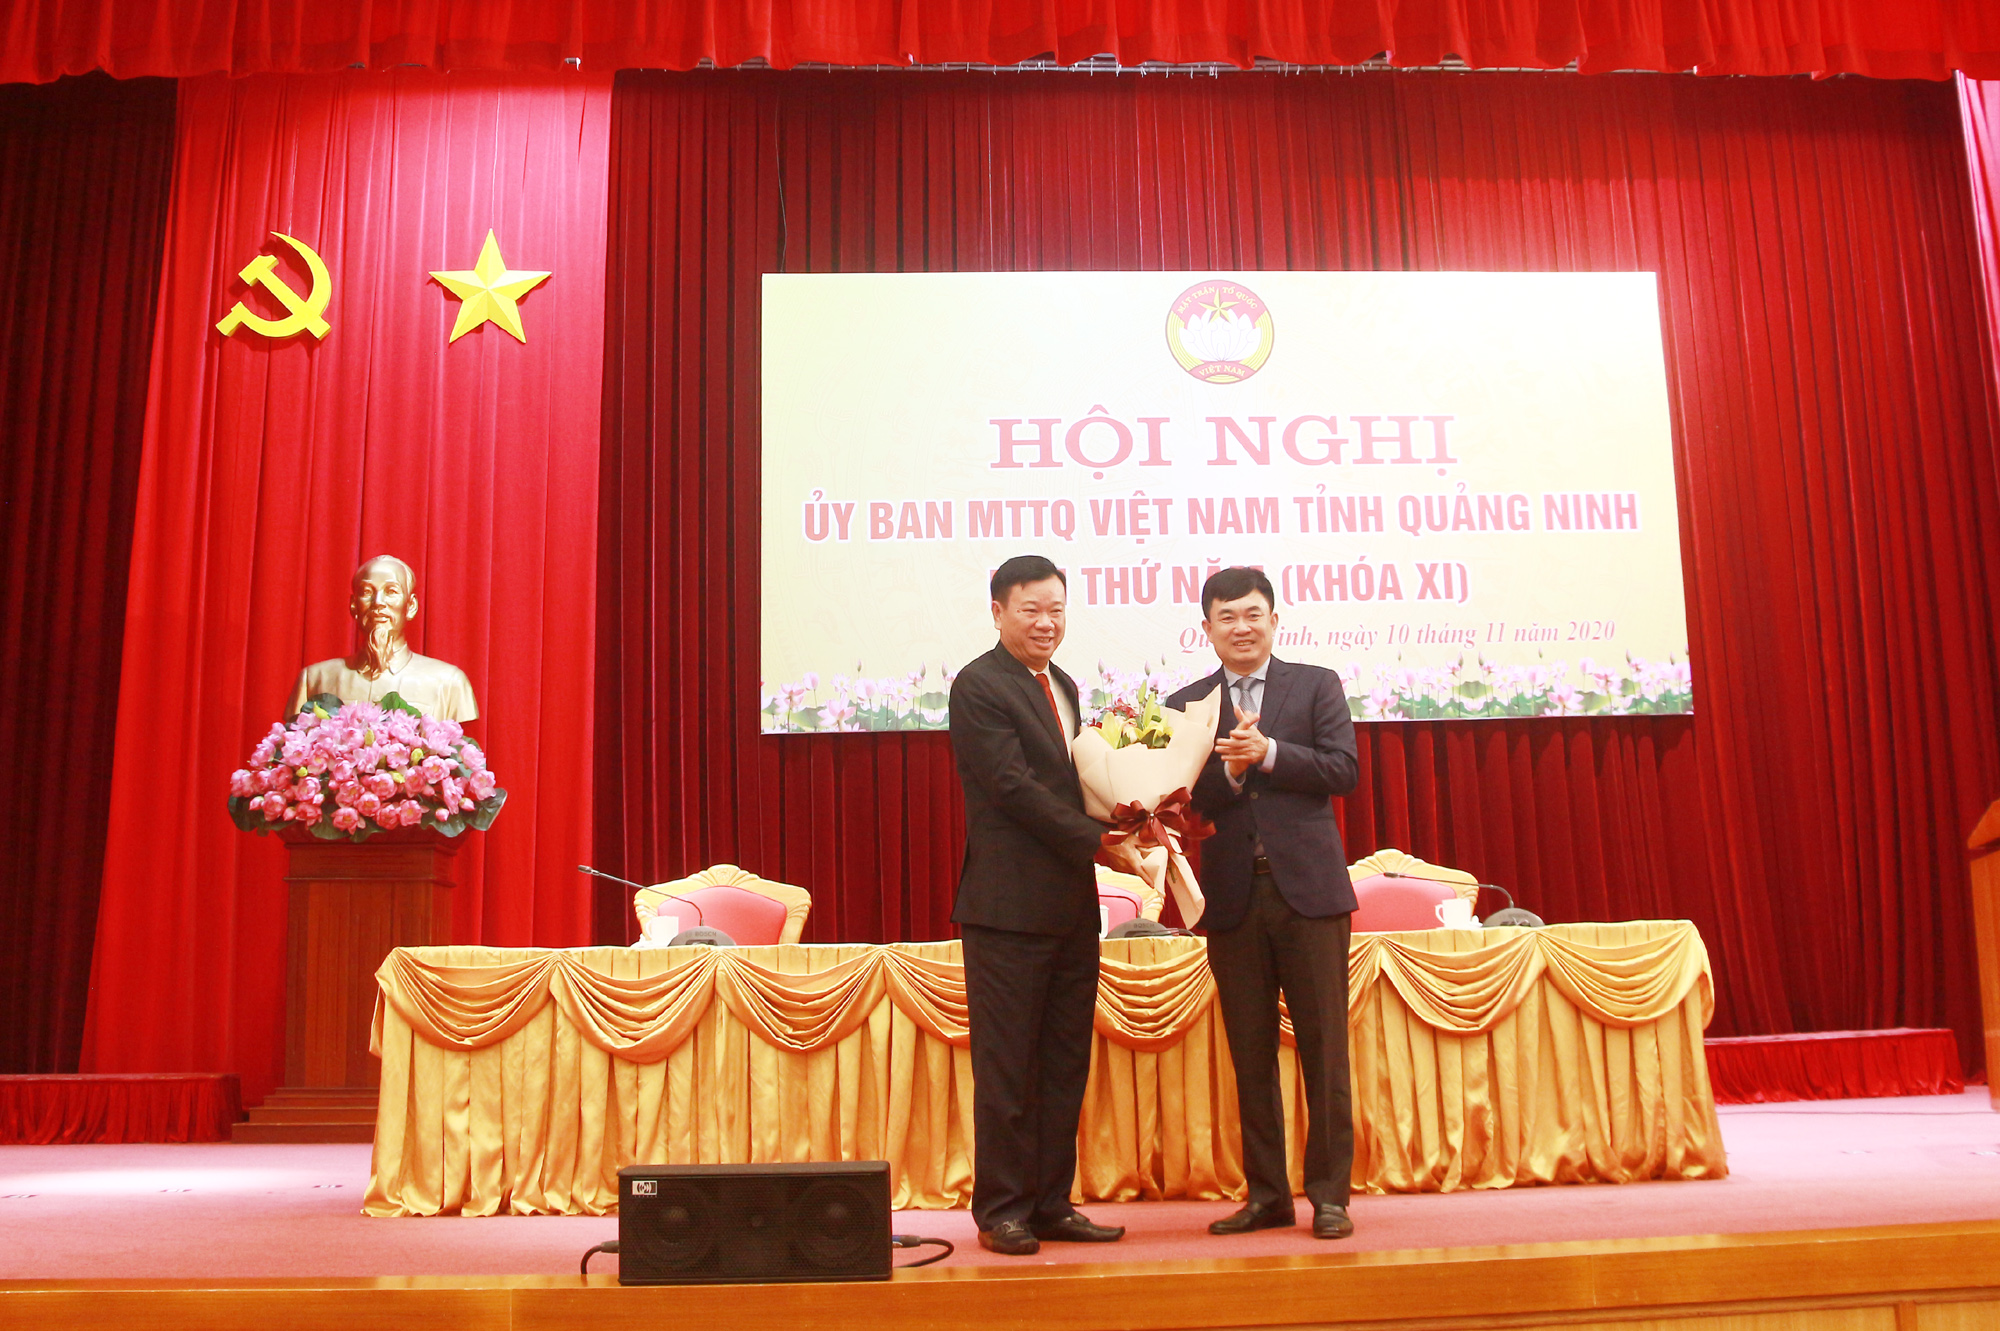 Đồng chí Ngô Hoàng Ngân, Phó Bí thư Thường trực Tỉnh ủy tặng hoa đồng chí Nguyễn Văn Hưởng.